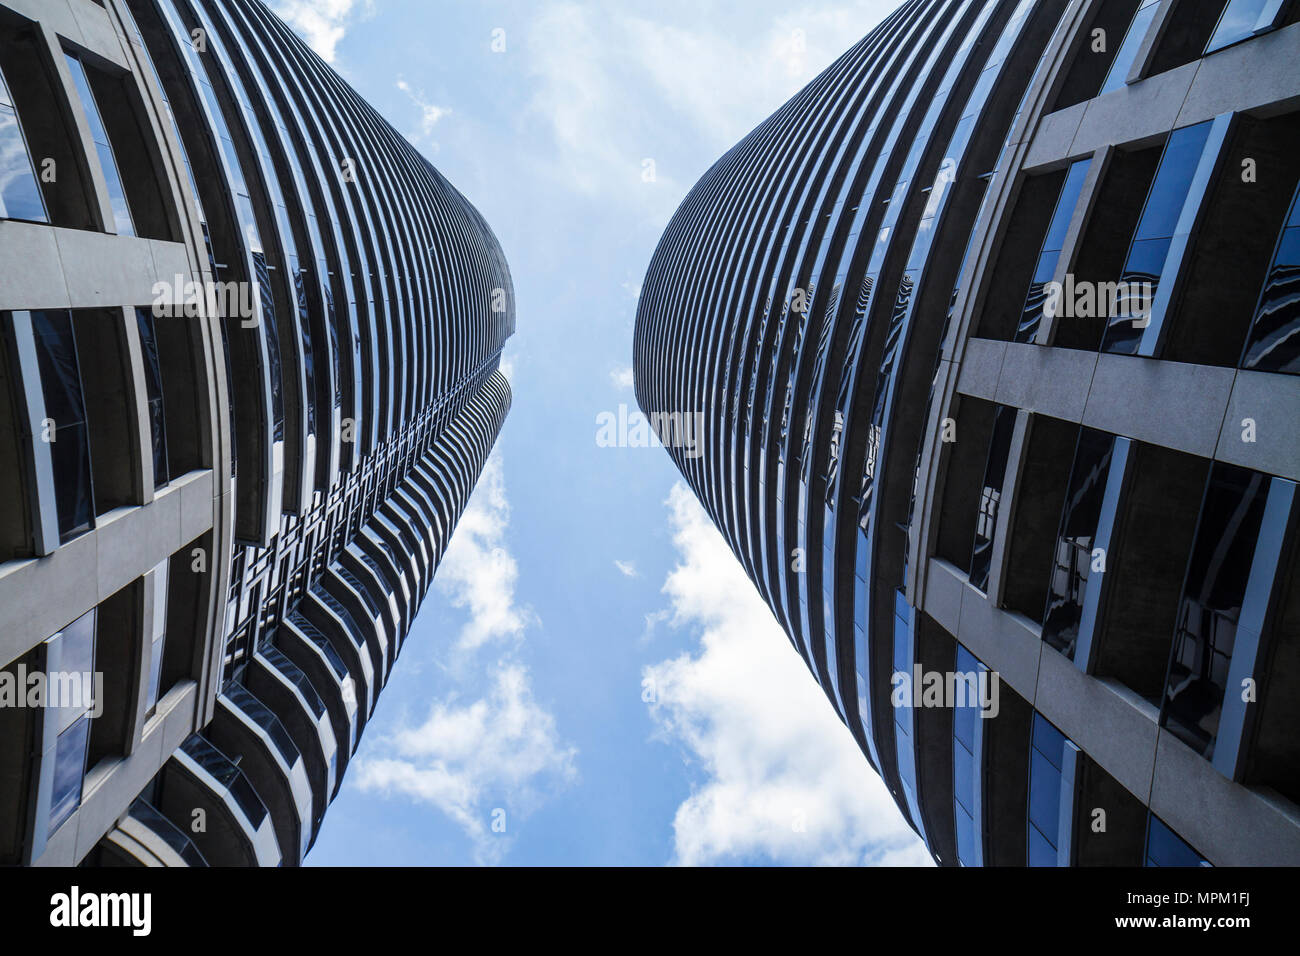 Toronto Canada,le met, hauteur gratte-ciel gratte-ciel gratte-ciel bâtiment immeubles condominium appartements résidentiels logement, développement urbain, resi Banque D'Images